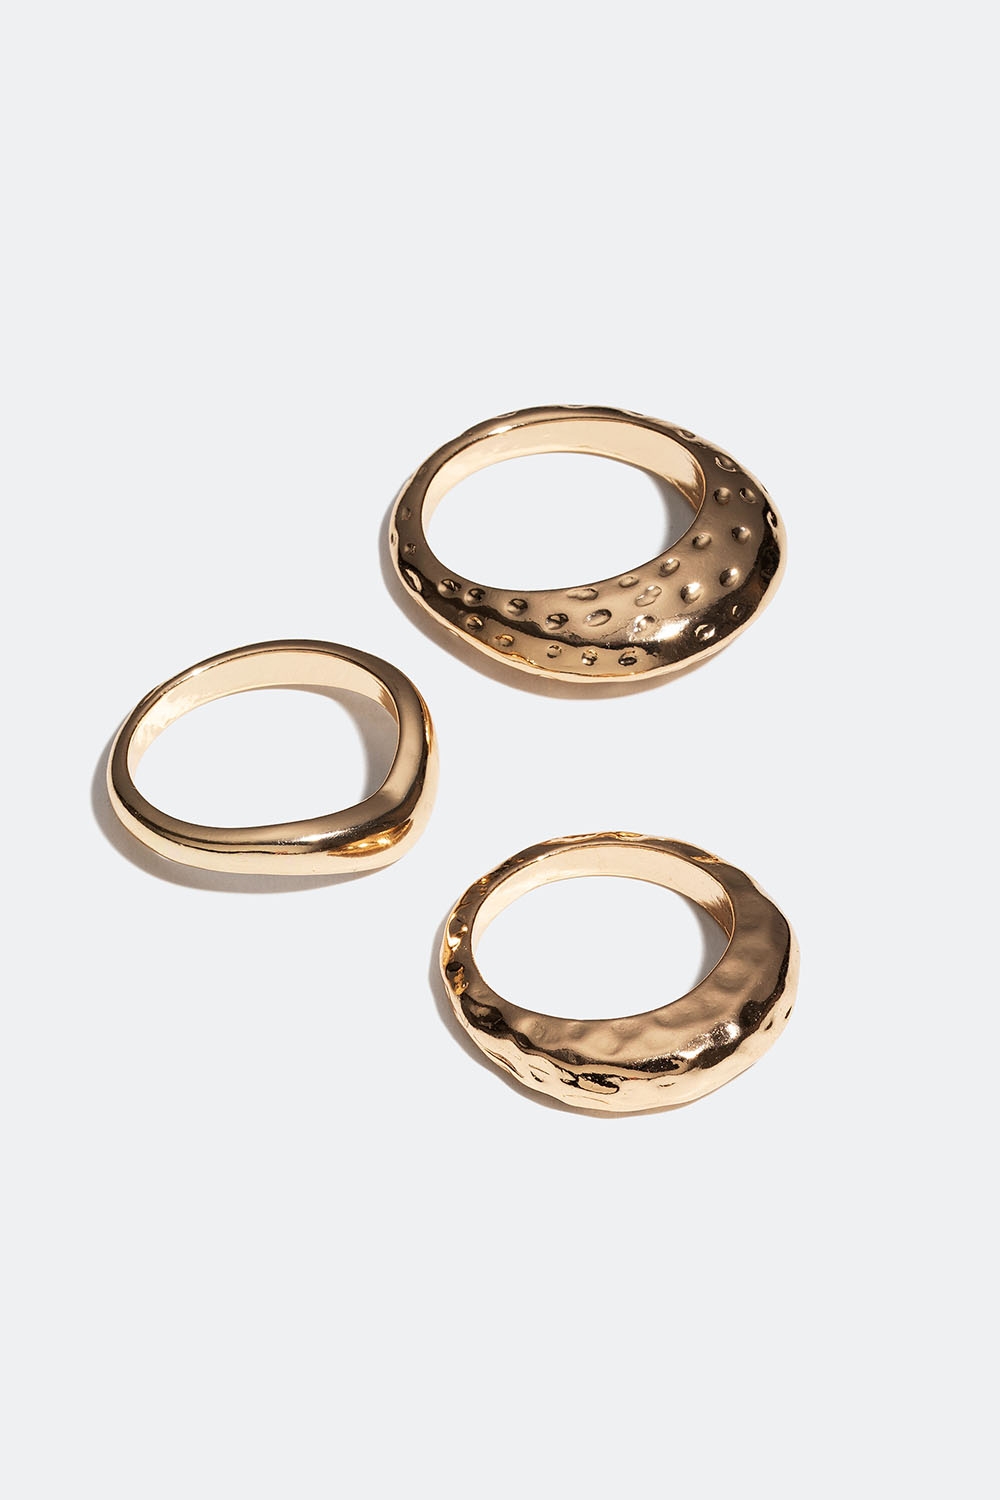 Gullfargede ringer i glatt og hamret design, 3-pakning i gruppen Smykker / Ringer / Flerpakning hos Glitter (256001032016)